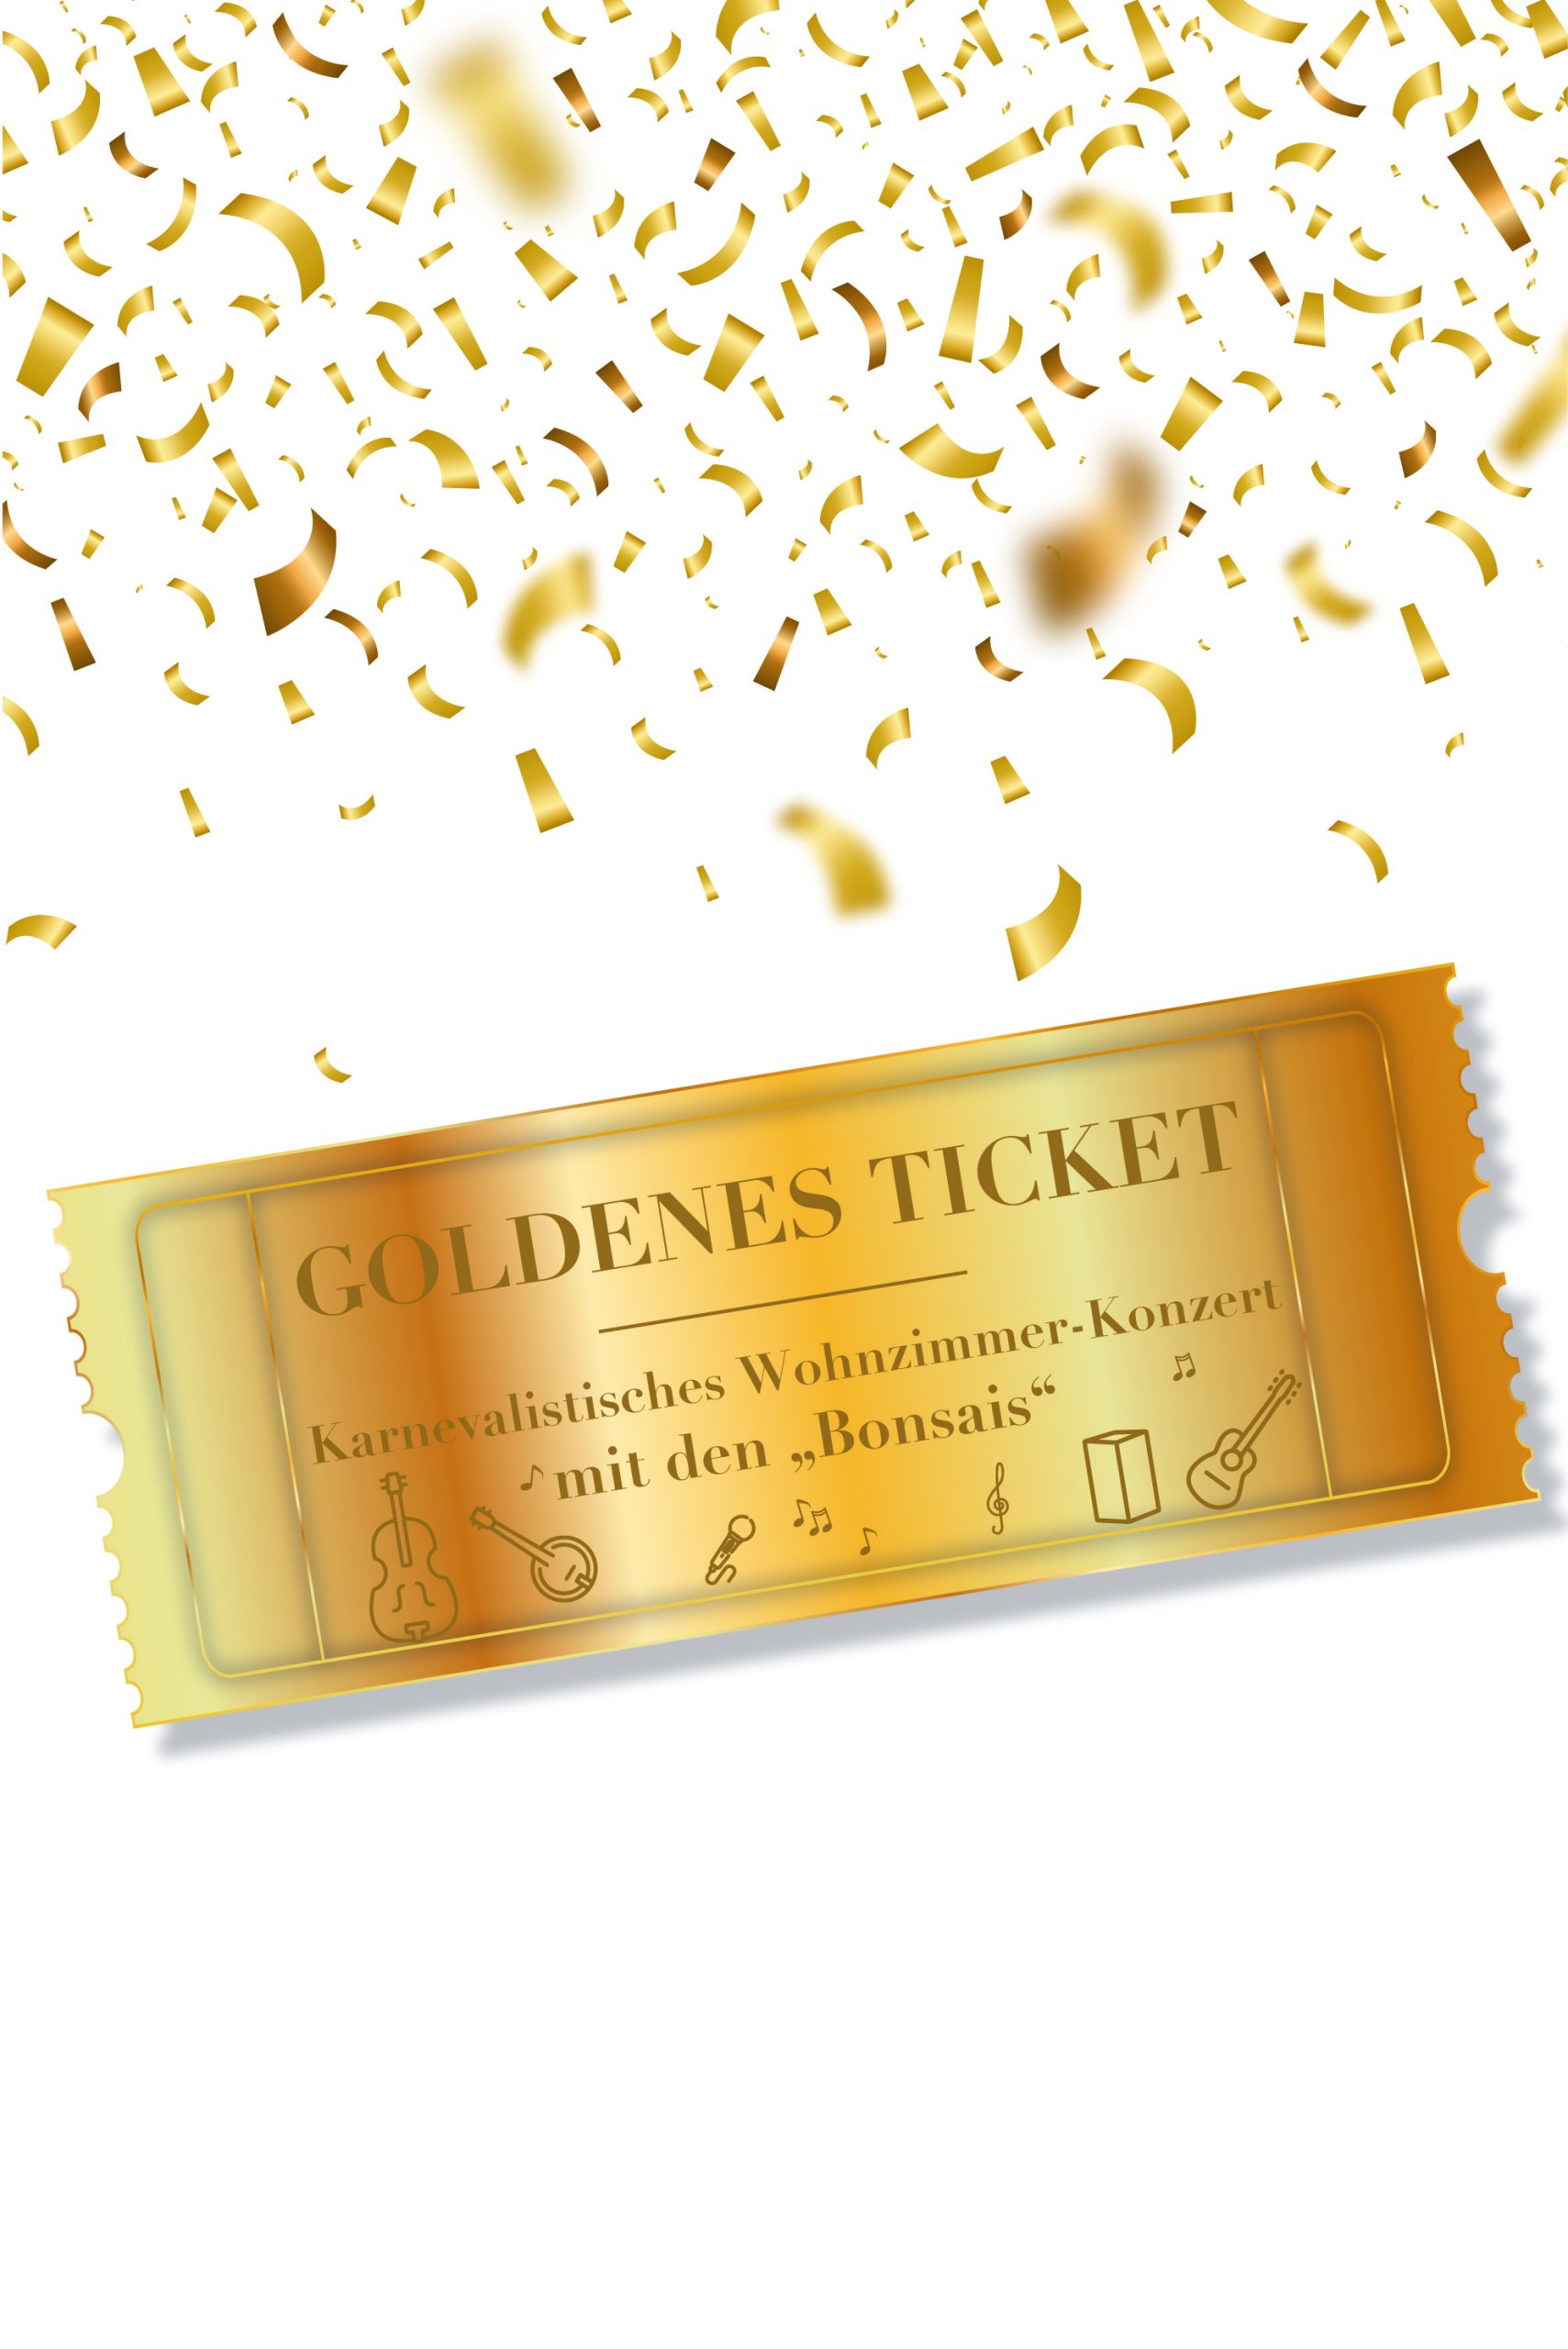 goldenes-ticket